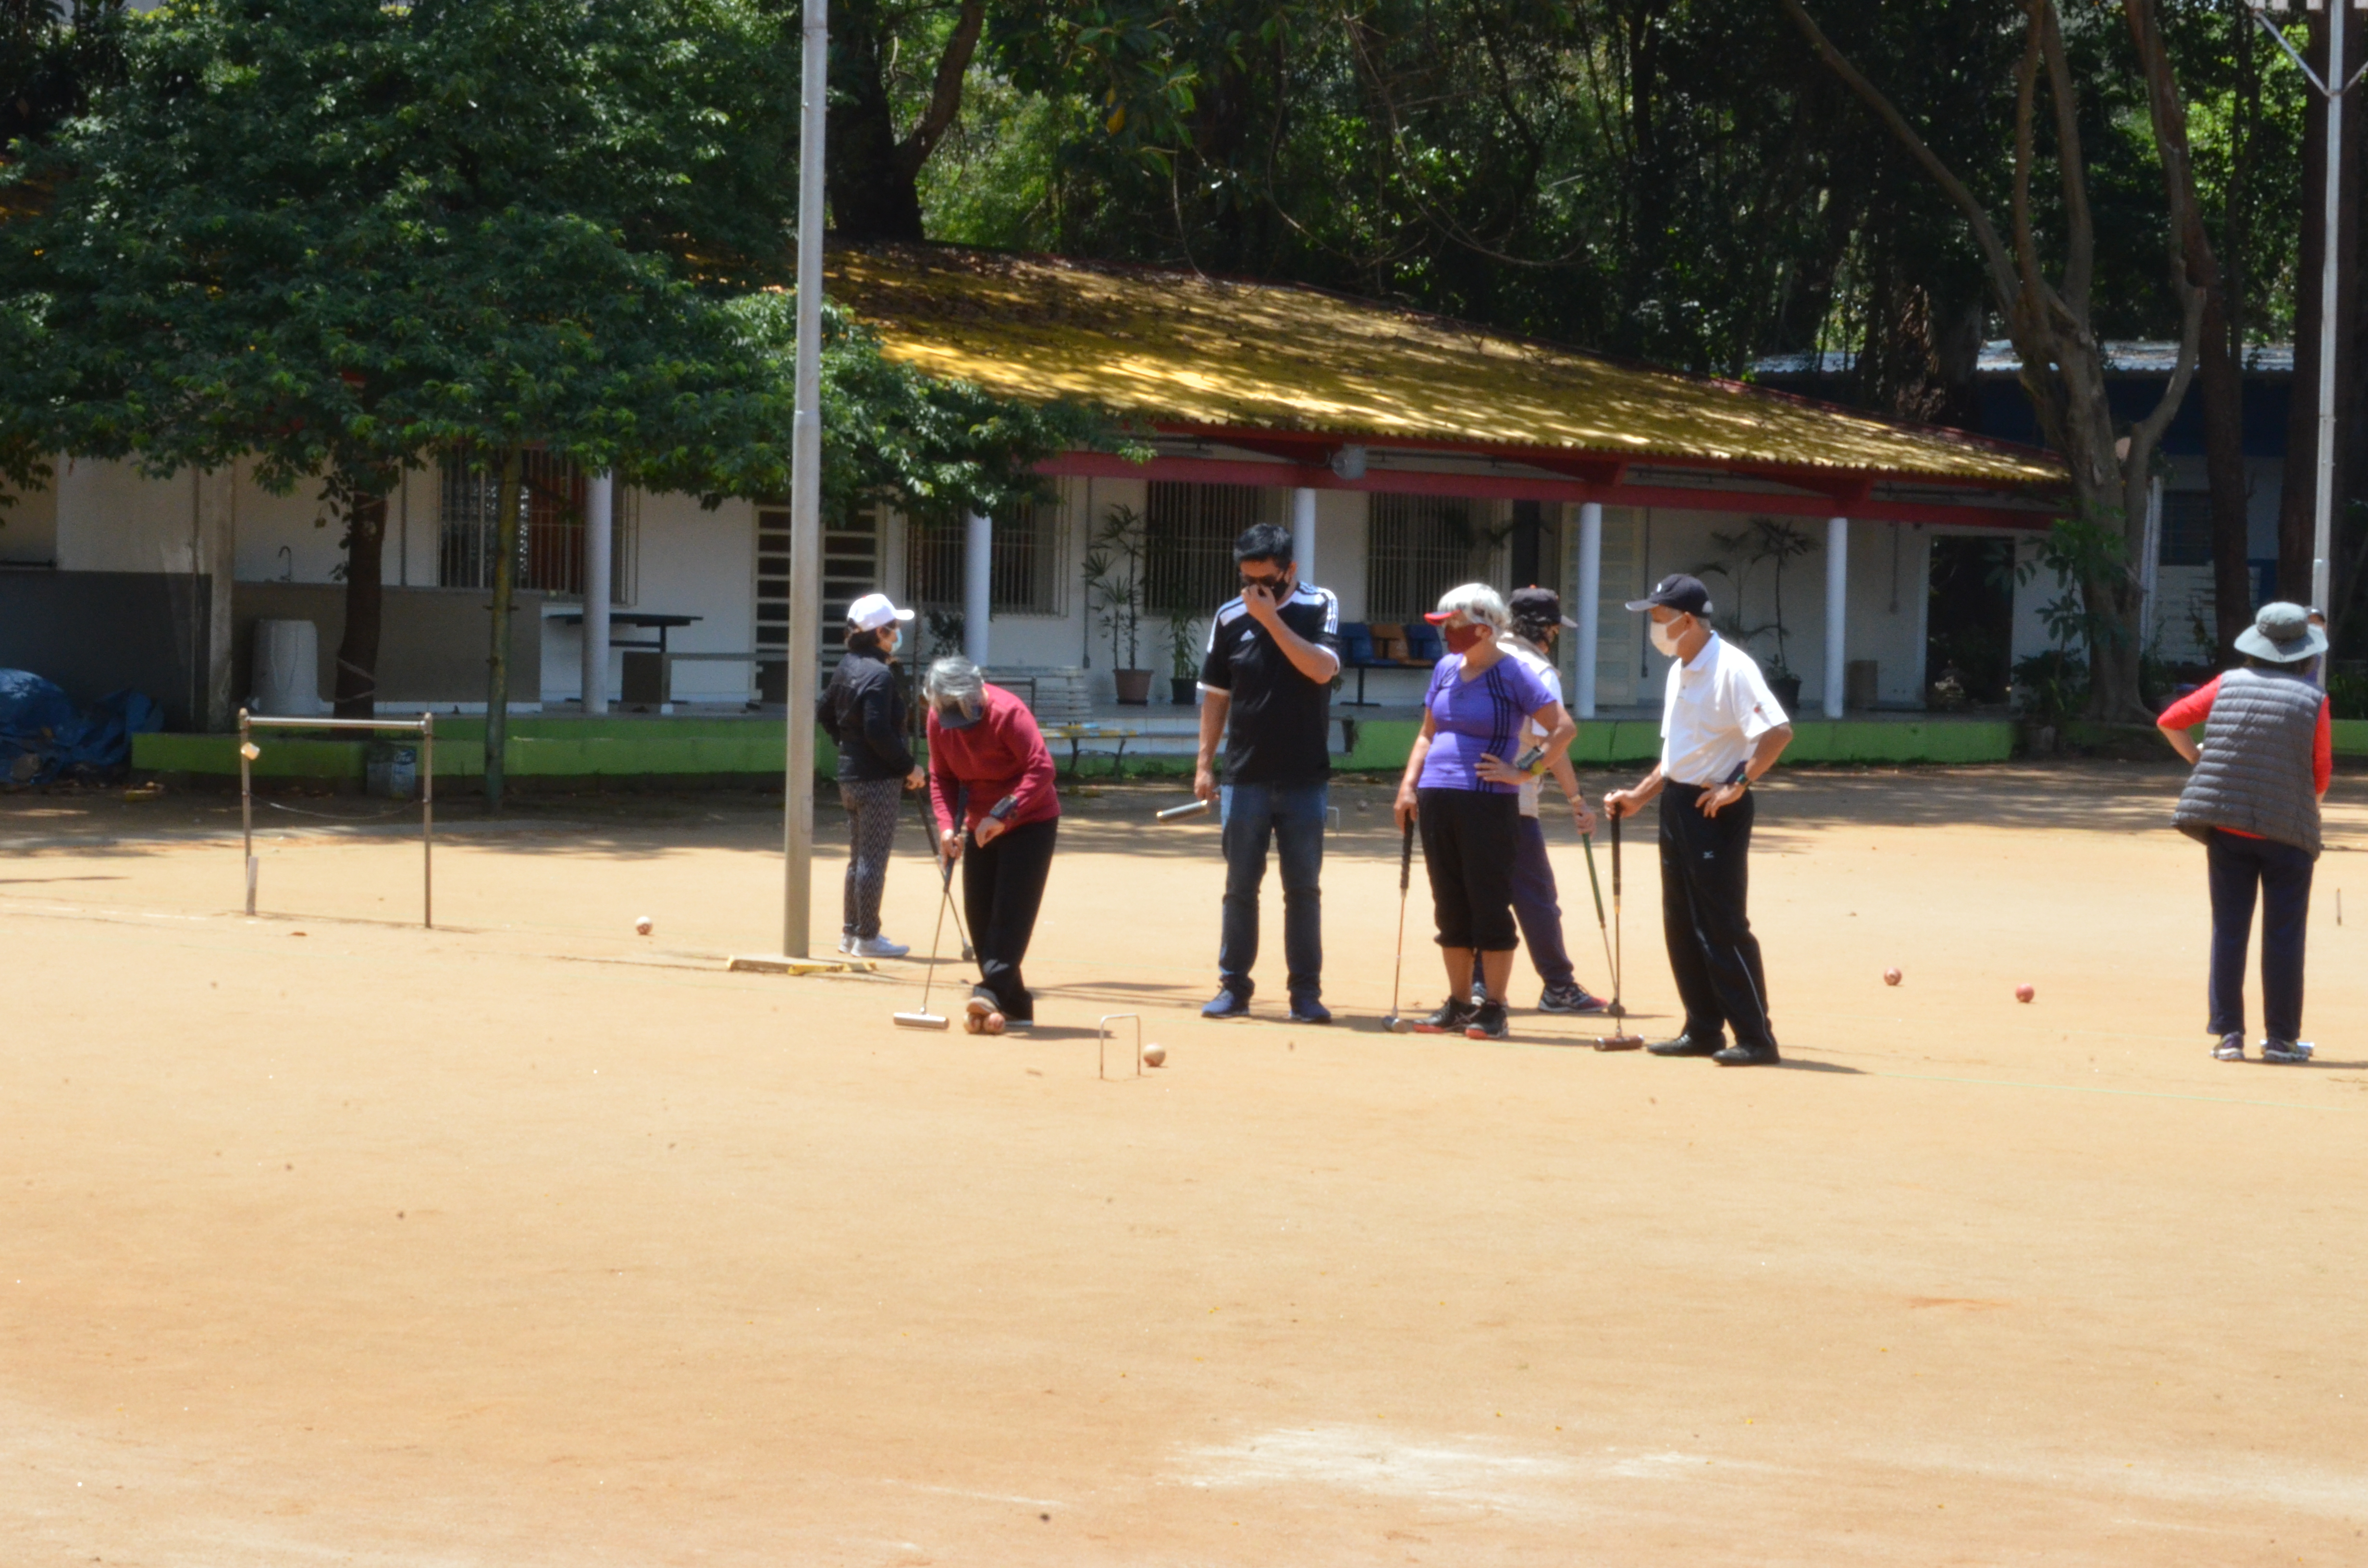 Na foto aparecem cinco pessoas praticando gateball